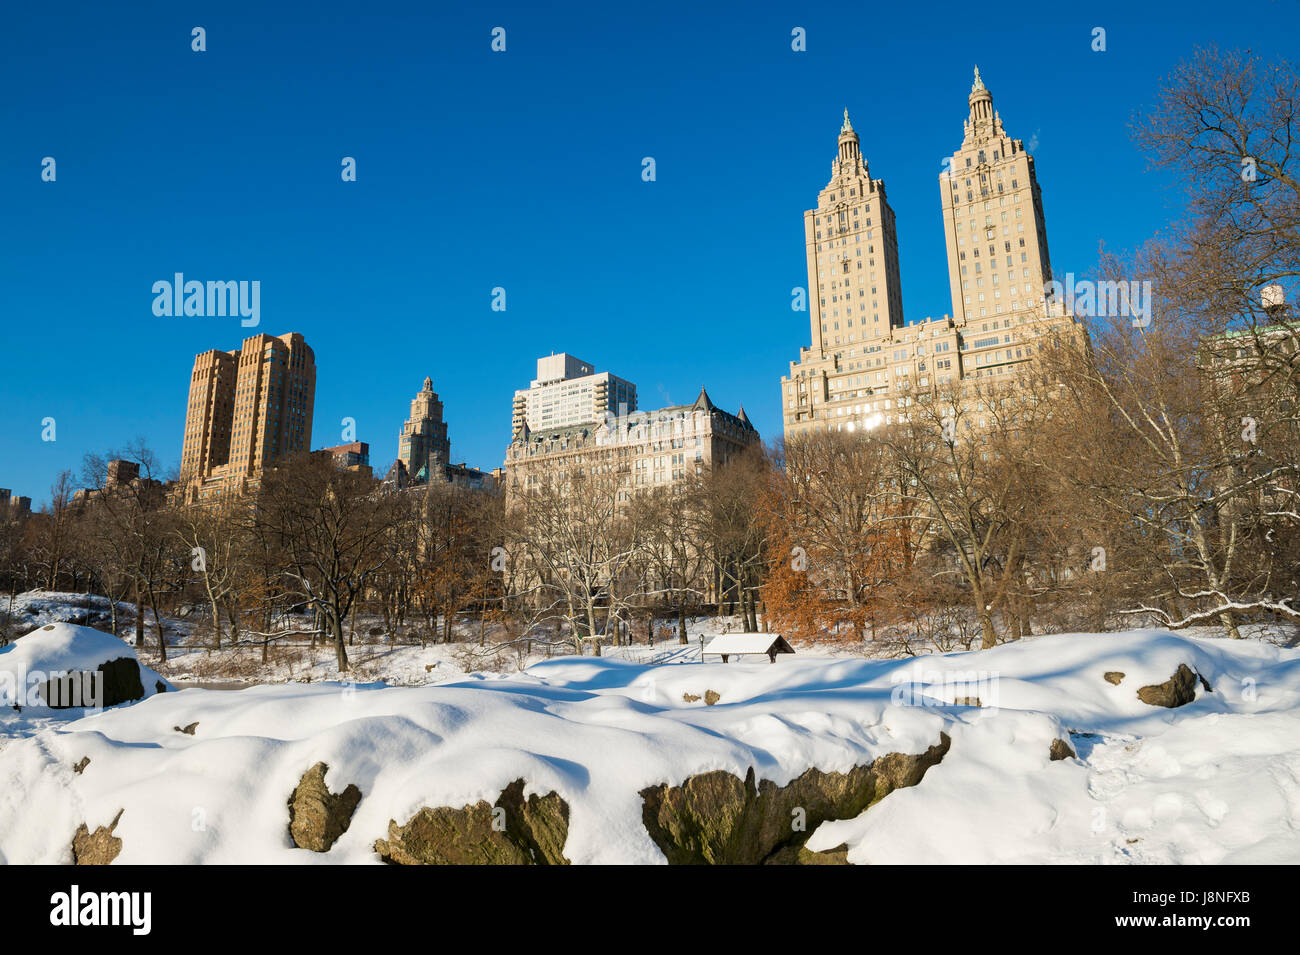 Vue panoramique de l'Upper West Side de la ville de Rocky bord du lac de Central Park le matin après une tempête de neige à New York City Banque D'Images